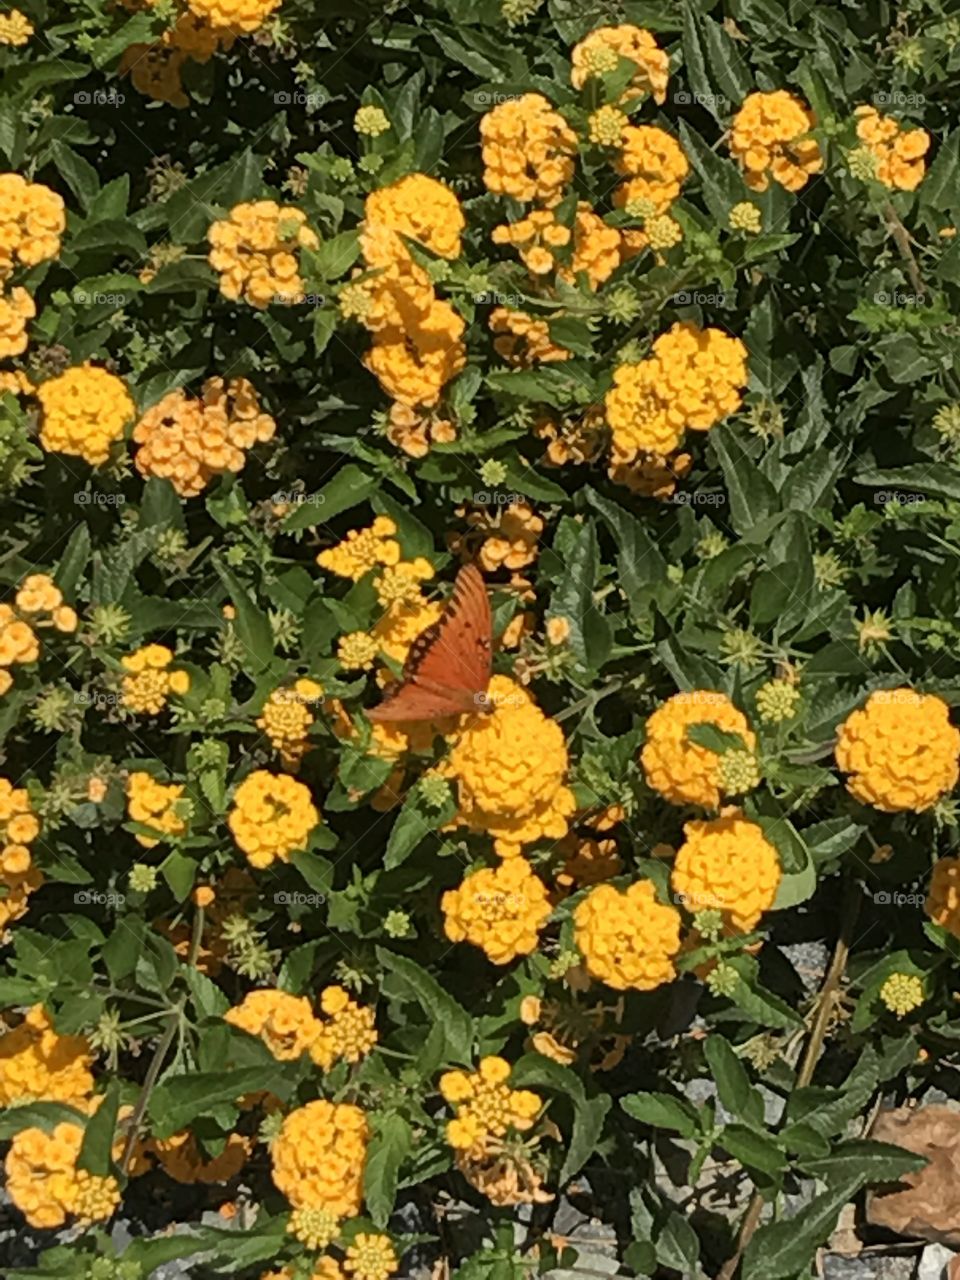 Butterfly in flowers